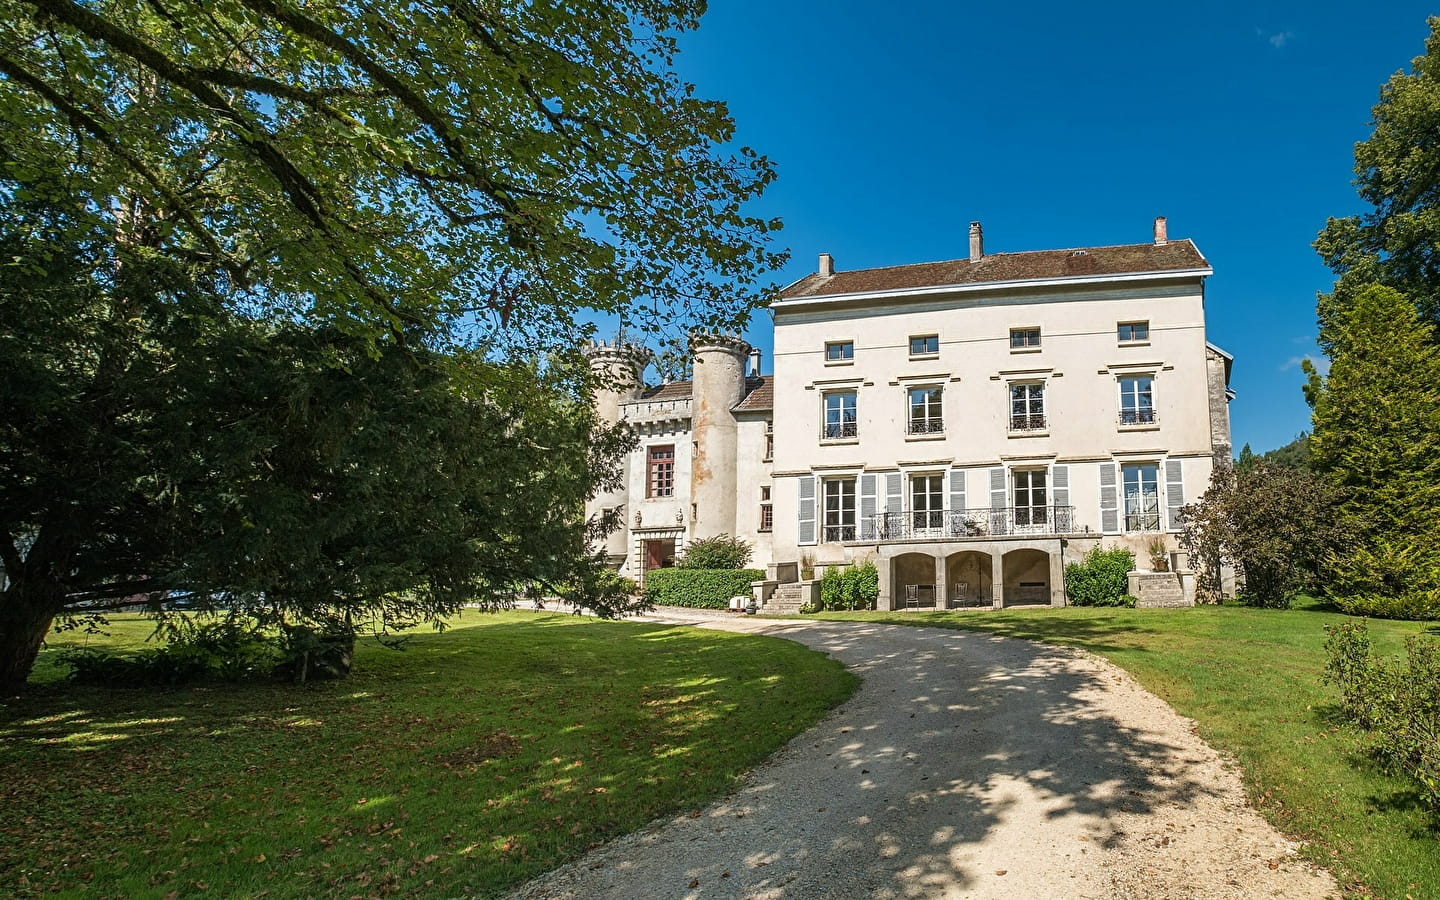 Chambres hôtelières Château de Maillat